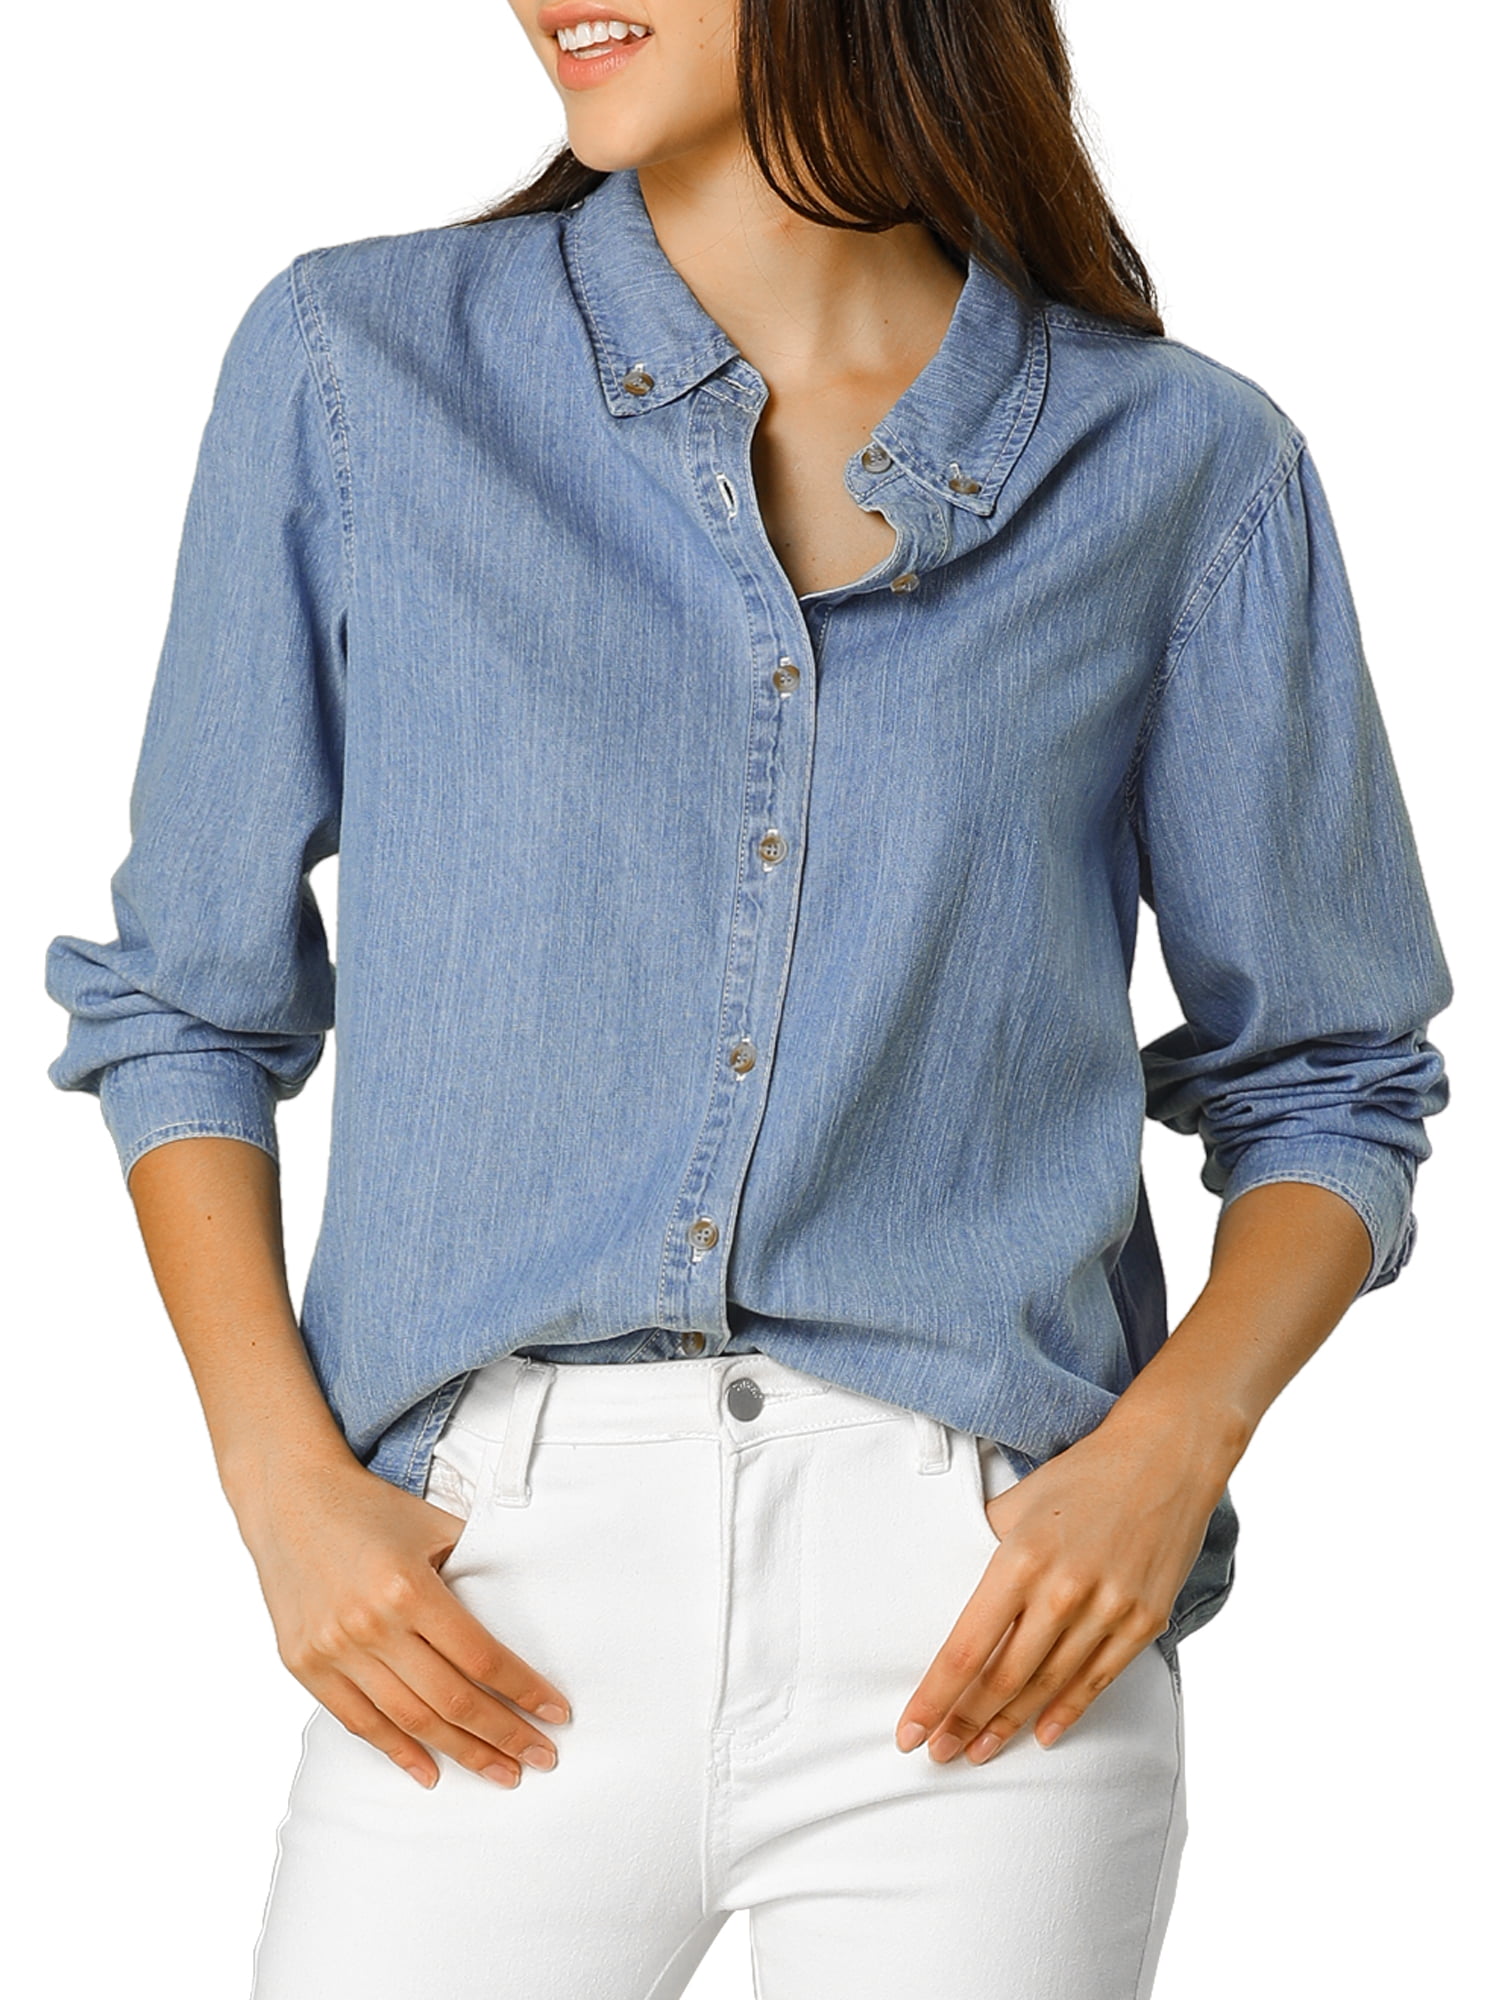 Allegra K - Allegra K Women's Classic Long Sleeve Button Up Denim Shirt